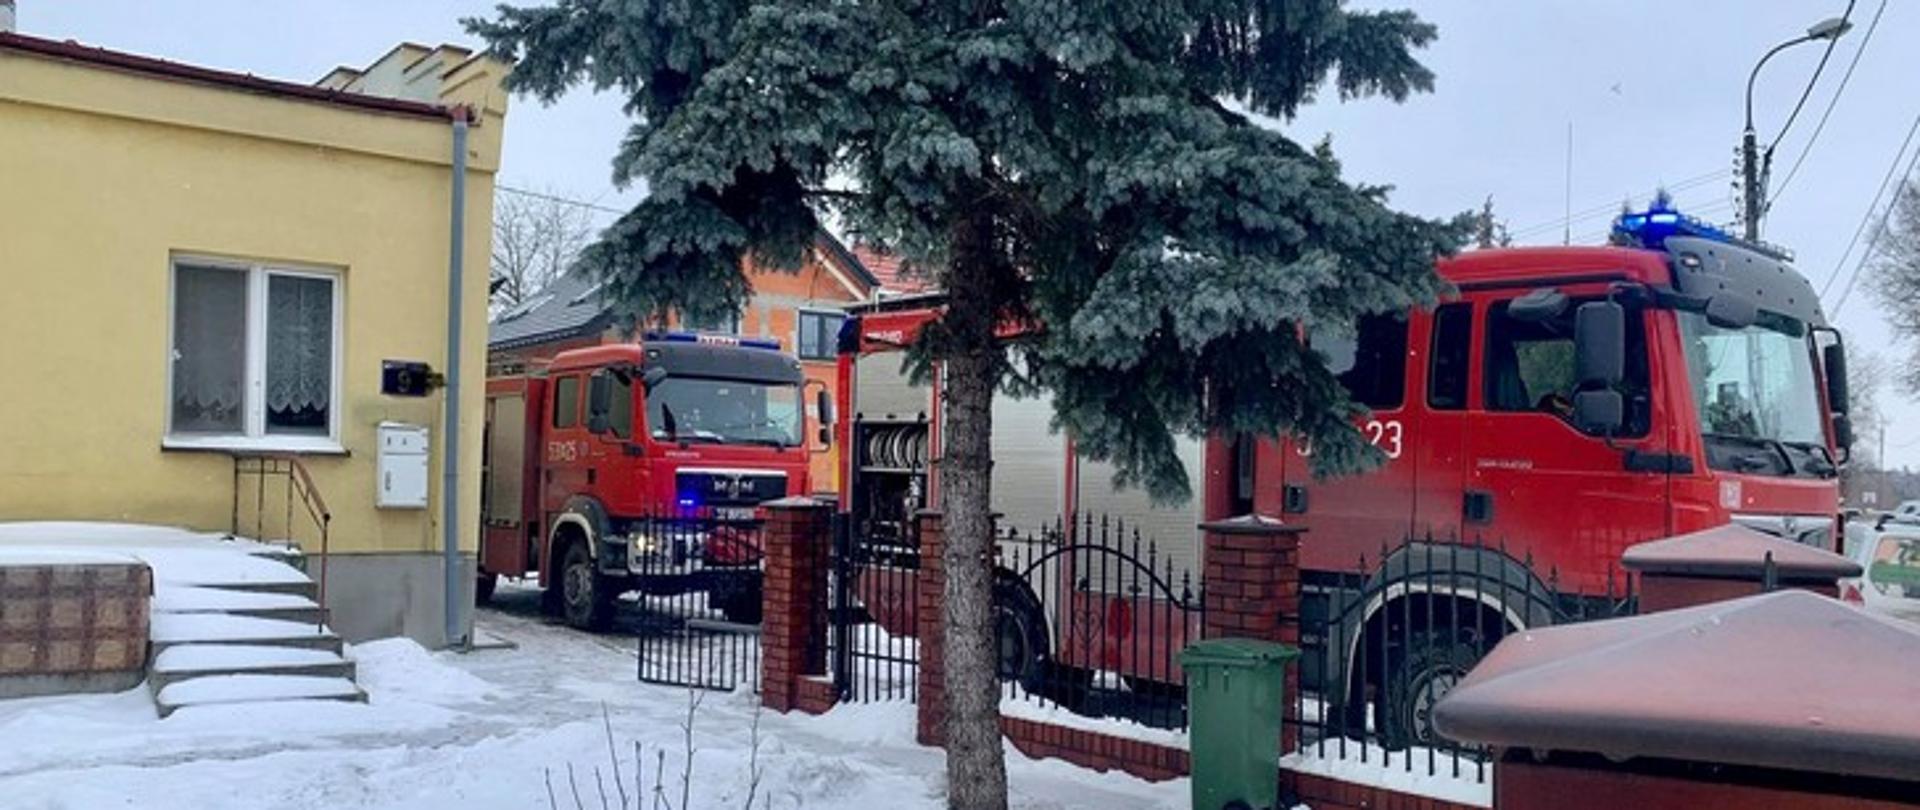 Zdjęcie przedstawia dwa samochody strażackie z włączonymi niebieskimi sygnałami ostrzegawczymi stojące wzdłuż ogrodzenia przy budynku mieszkalnym.